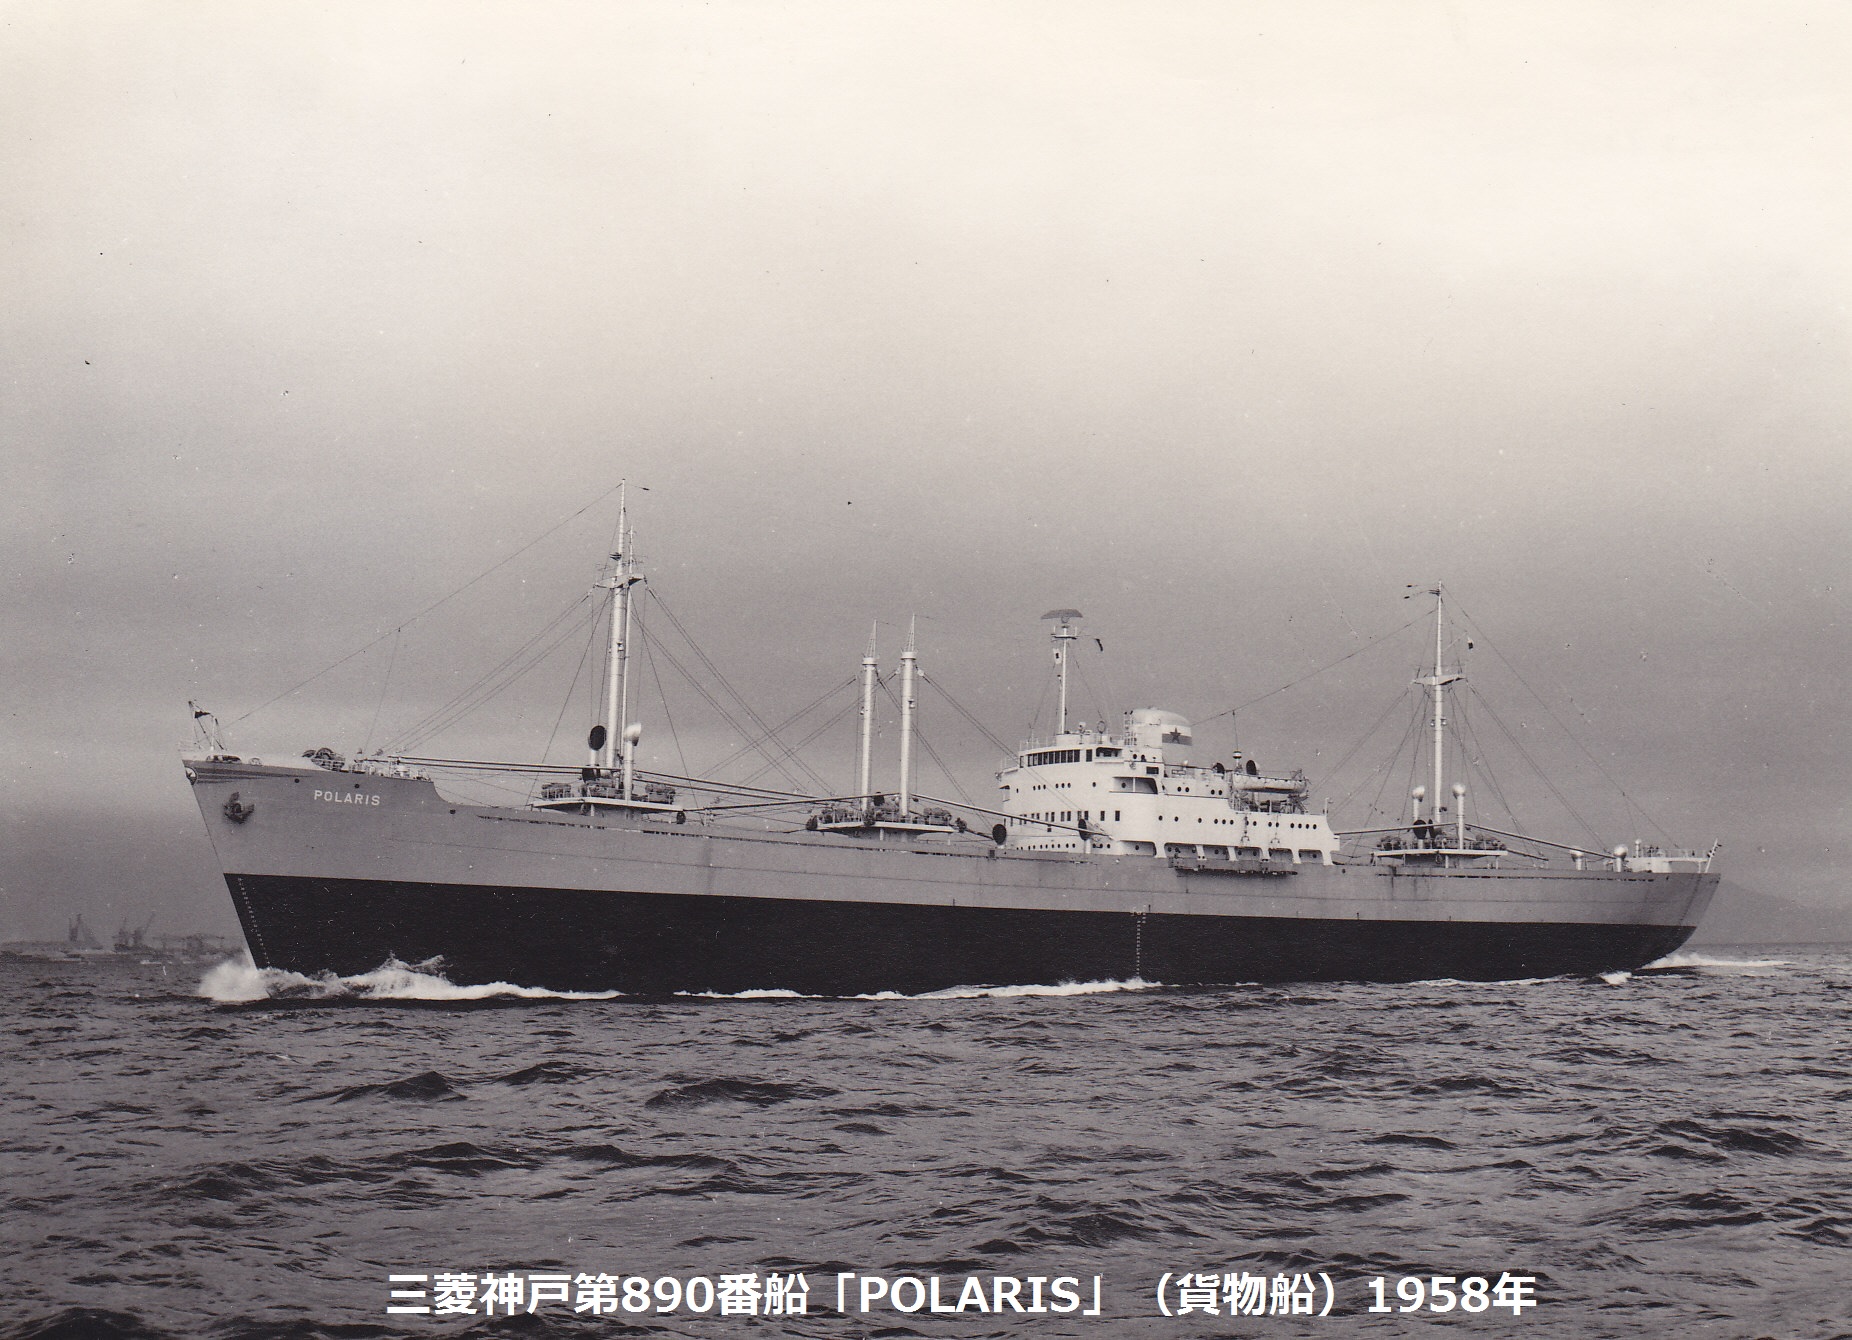 三菱神戸建造船完成写真(その1) | デジタル造船資料館